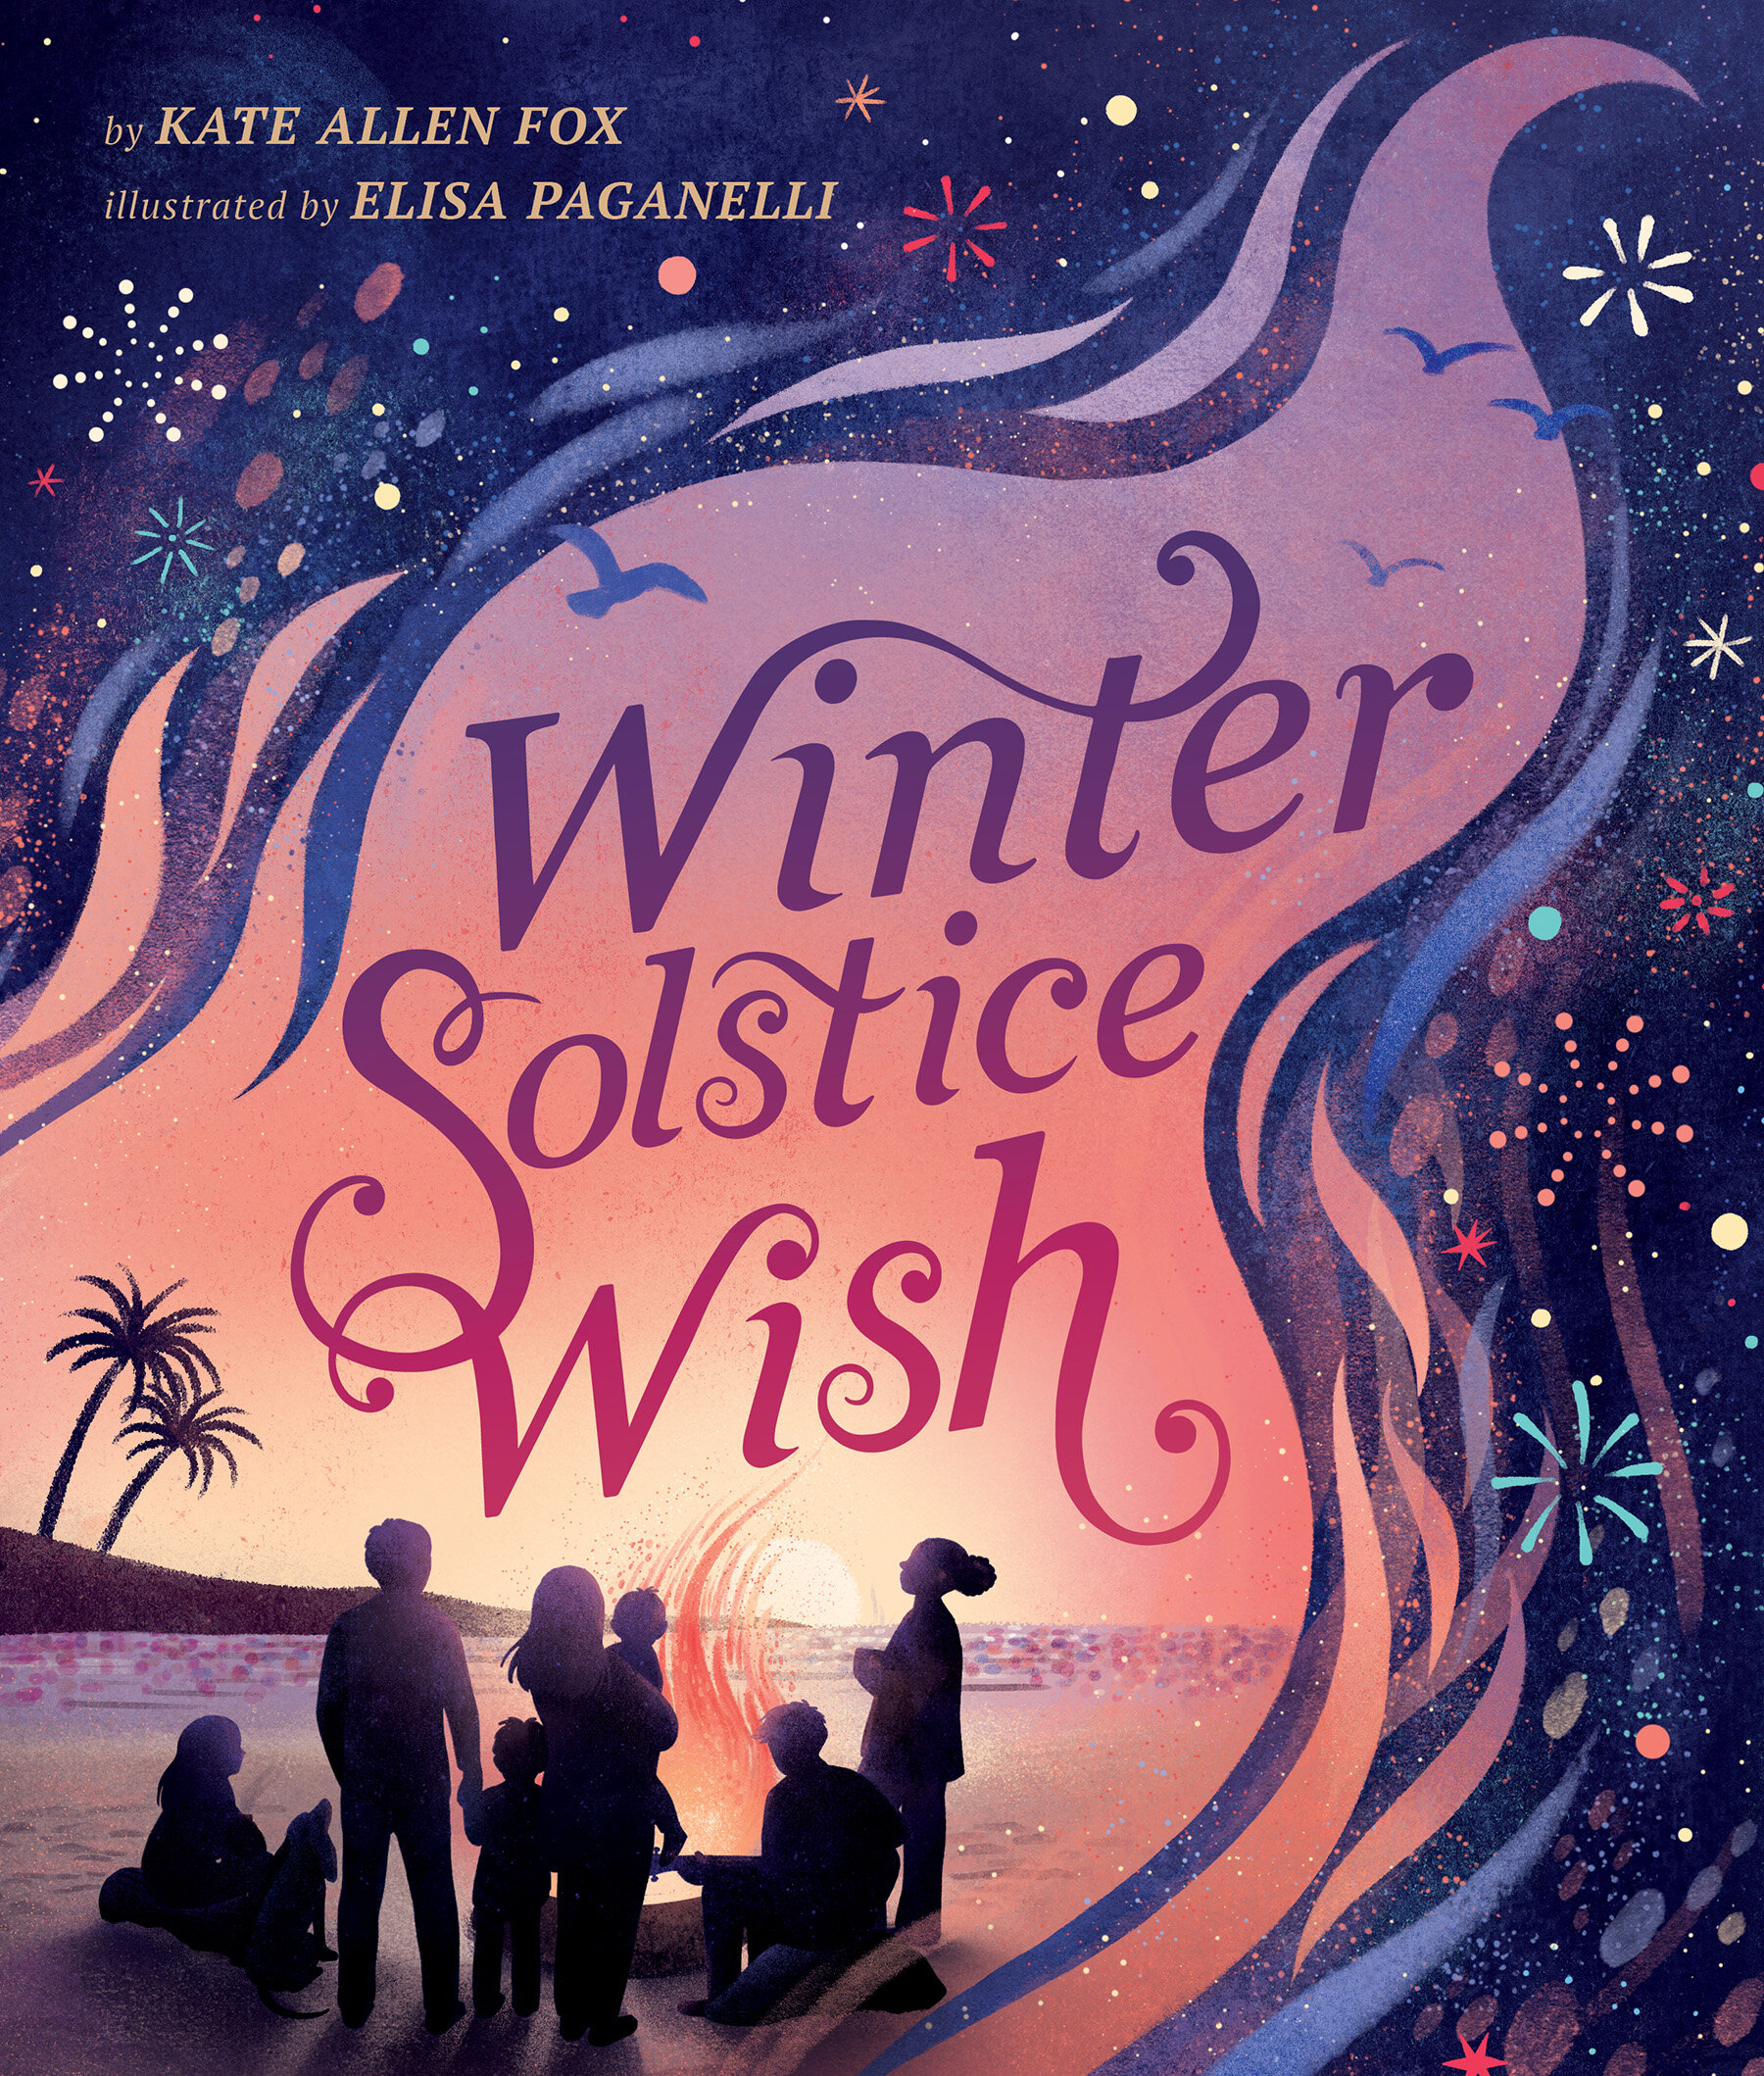 Winter Solstice Wish